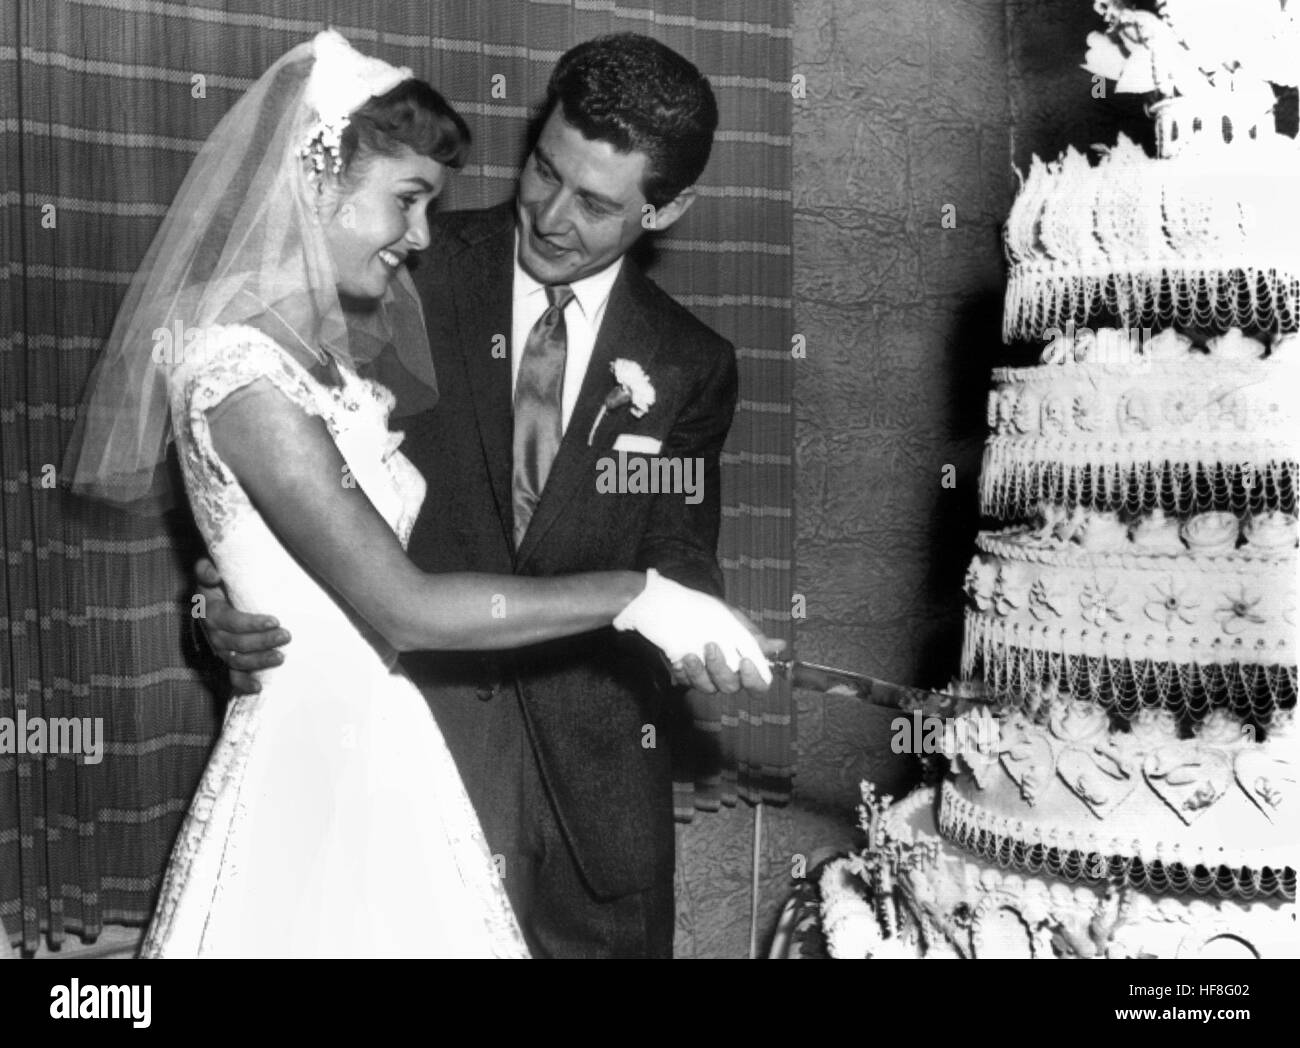 Die US-amerikanische Schauspielerin Debbie Reynolds und der Sänger Eddie Fisher schneiden am 26. September 1955 gemeinsam ihre Hochzeitstorte an. Debbie Reynolds gehörte in den 50er Jahren zu den größten 'Kassenmagneten' Hollywoods. Der Durchbruch gelang ihr 1952, als Gene Kelly sie für den Film 'Singin' in the Rain' entdeckte. | Verwendung weltweit/picture alliance Stock Photo